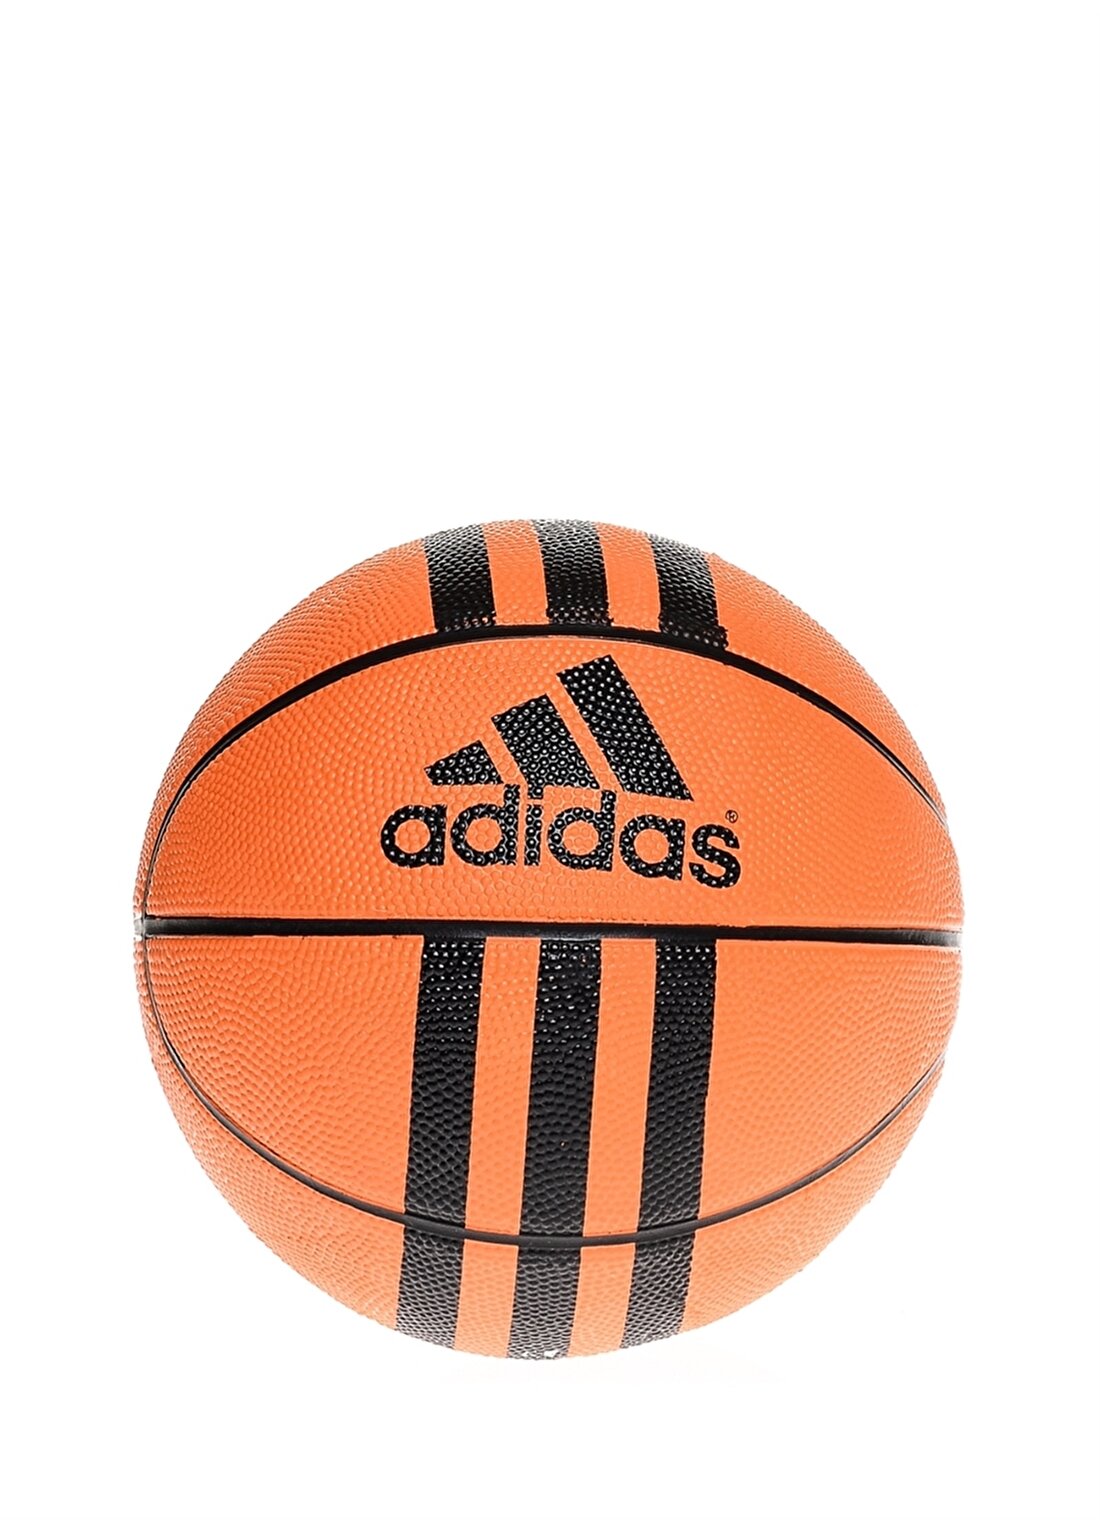 Adidas 3 Stripes Mini Futbol Topu